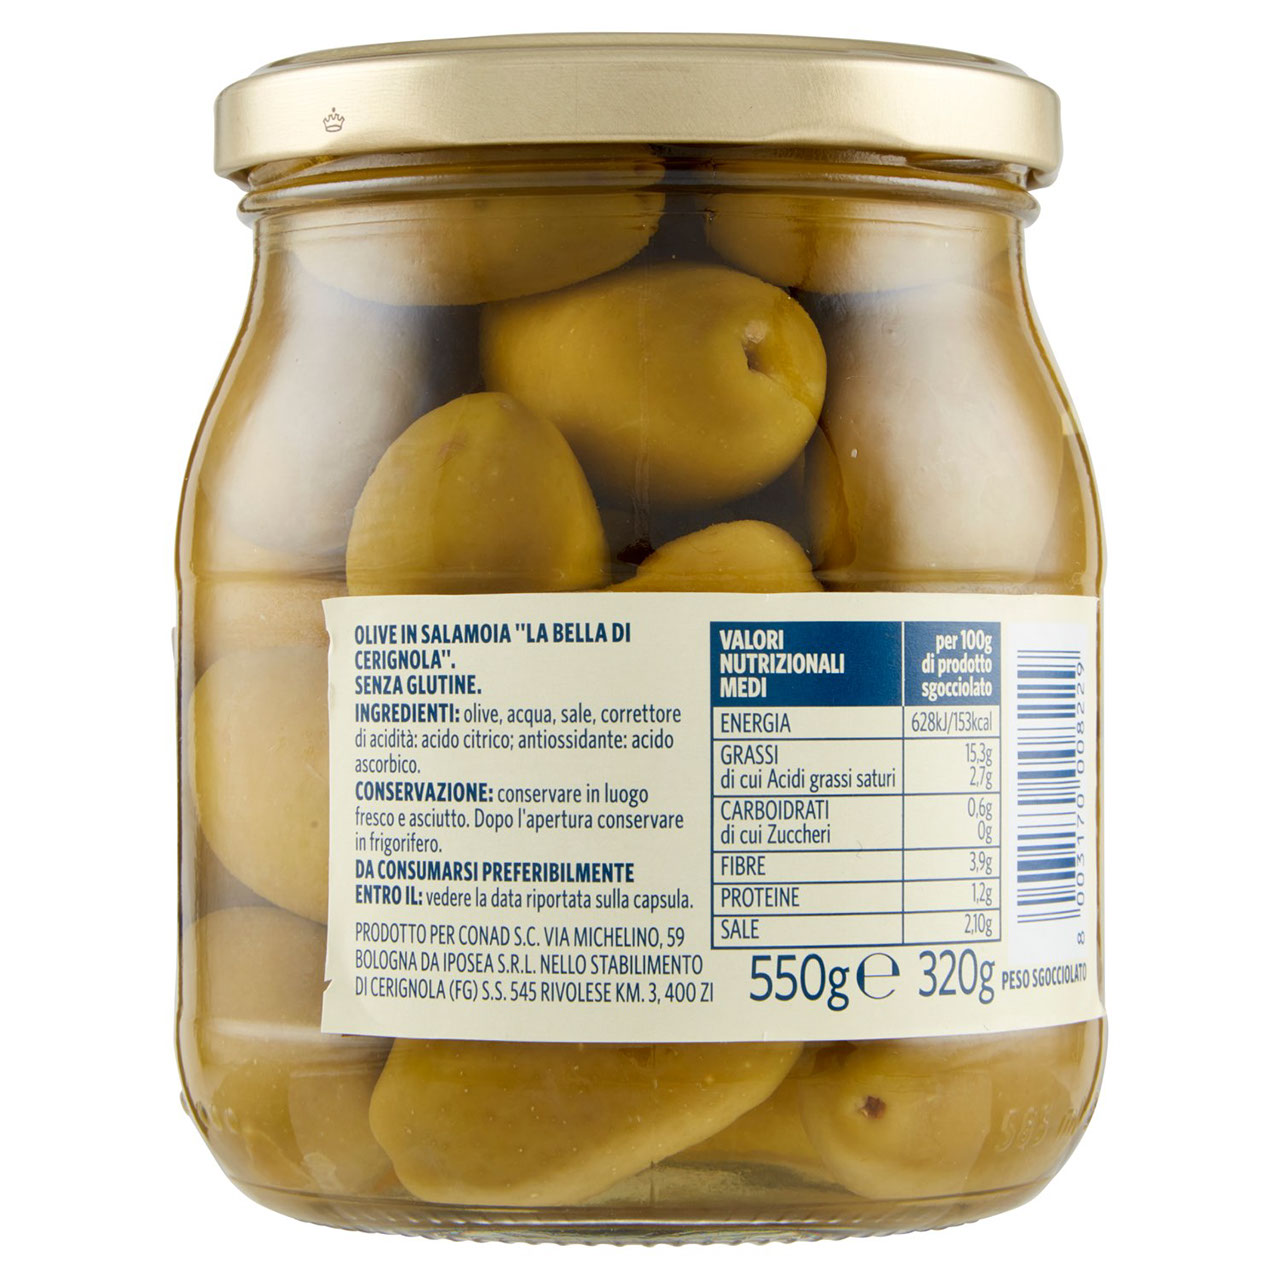 Olive La Bella di Cerignola Salamoia 550g Conad